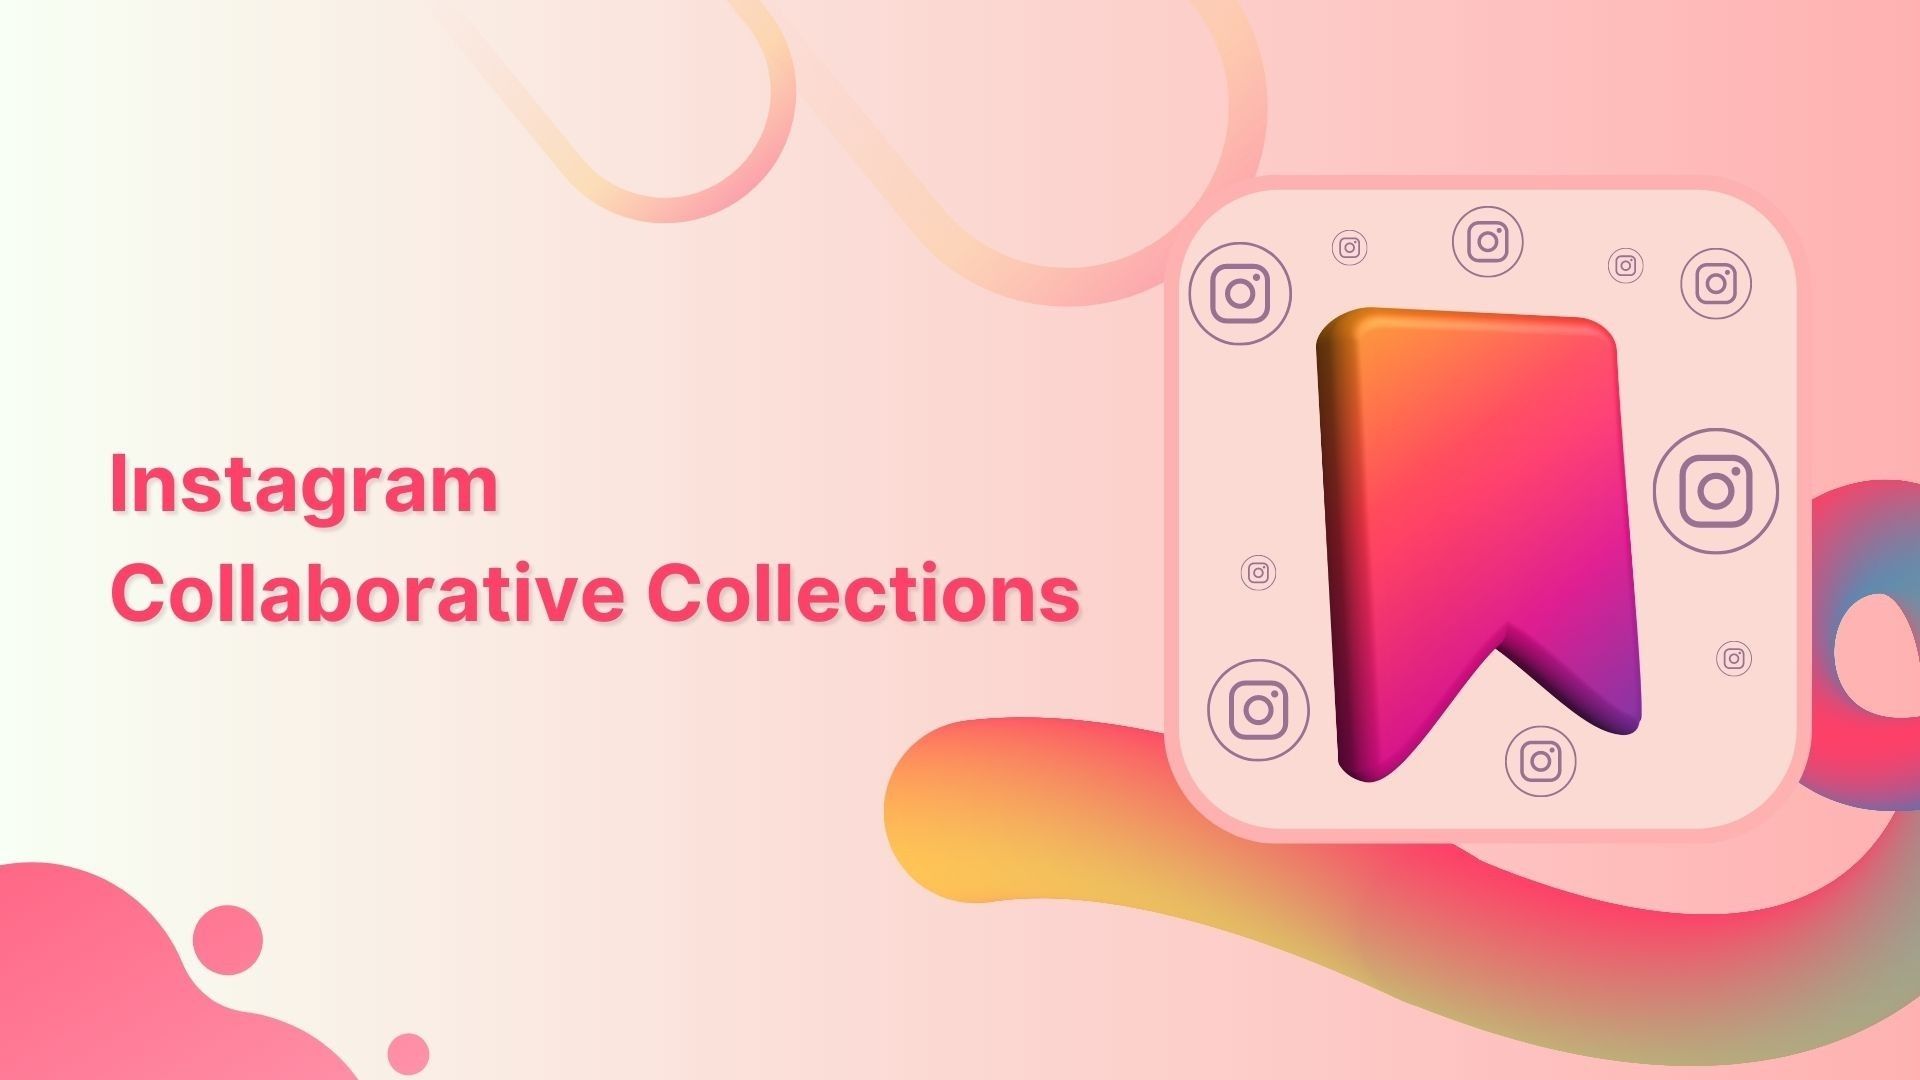 Comment créer des collections collaboratives Instagram et enregistrer des publications avec des amis ?